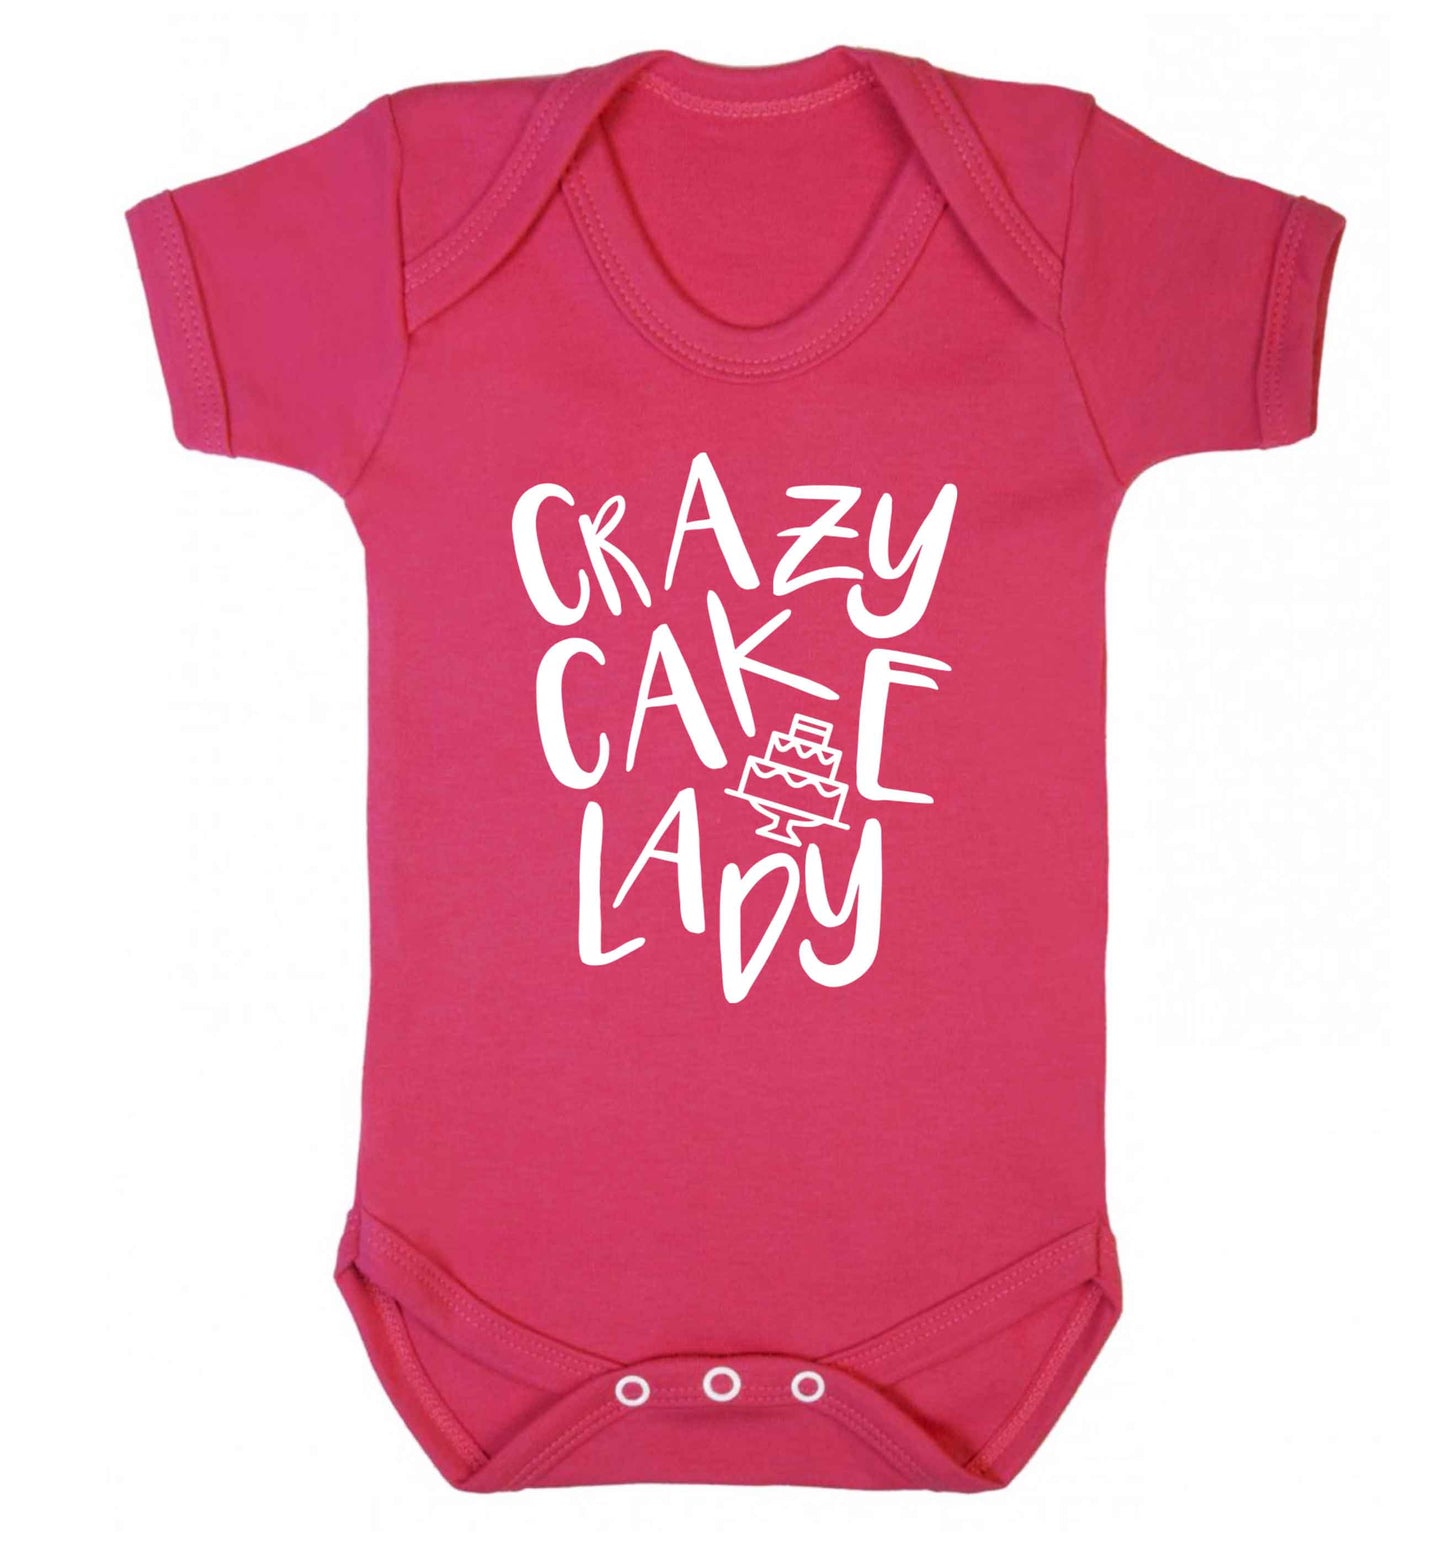 Crazy cake lady Baby Vest dark pink 18-24 months